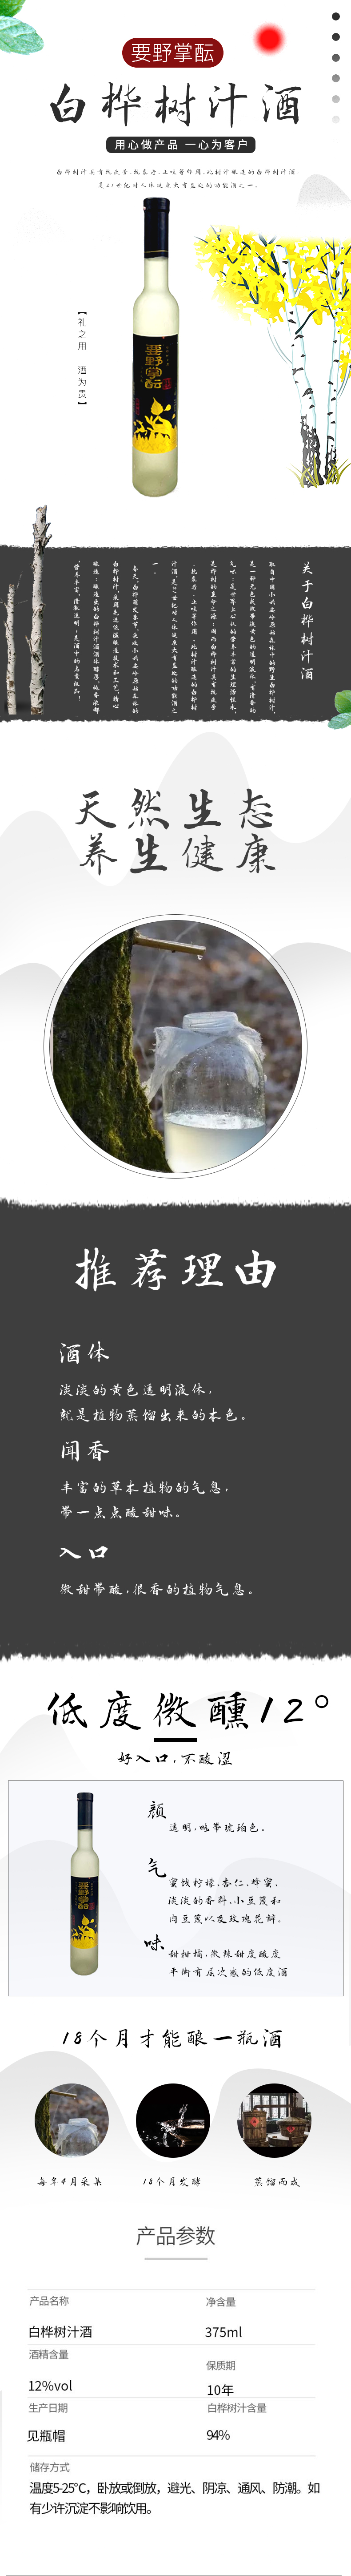 白桦树汁酒.jpg